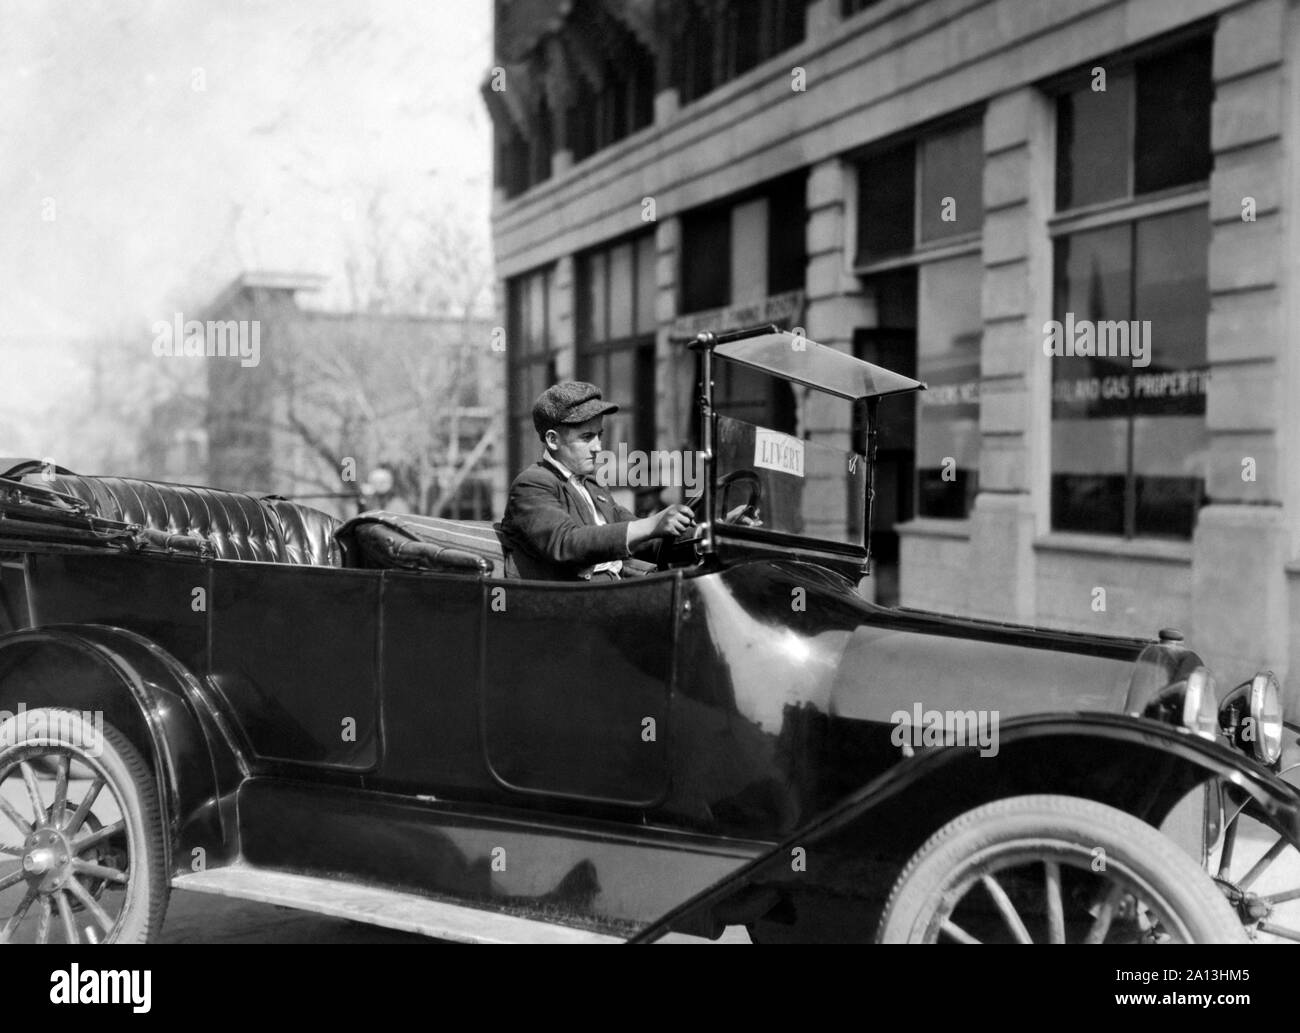 Un jeune de 15 ans chauffeur conduit un taxi à Tulsa, Oklahoma, mars 1917. Banque D'Images